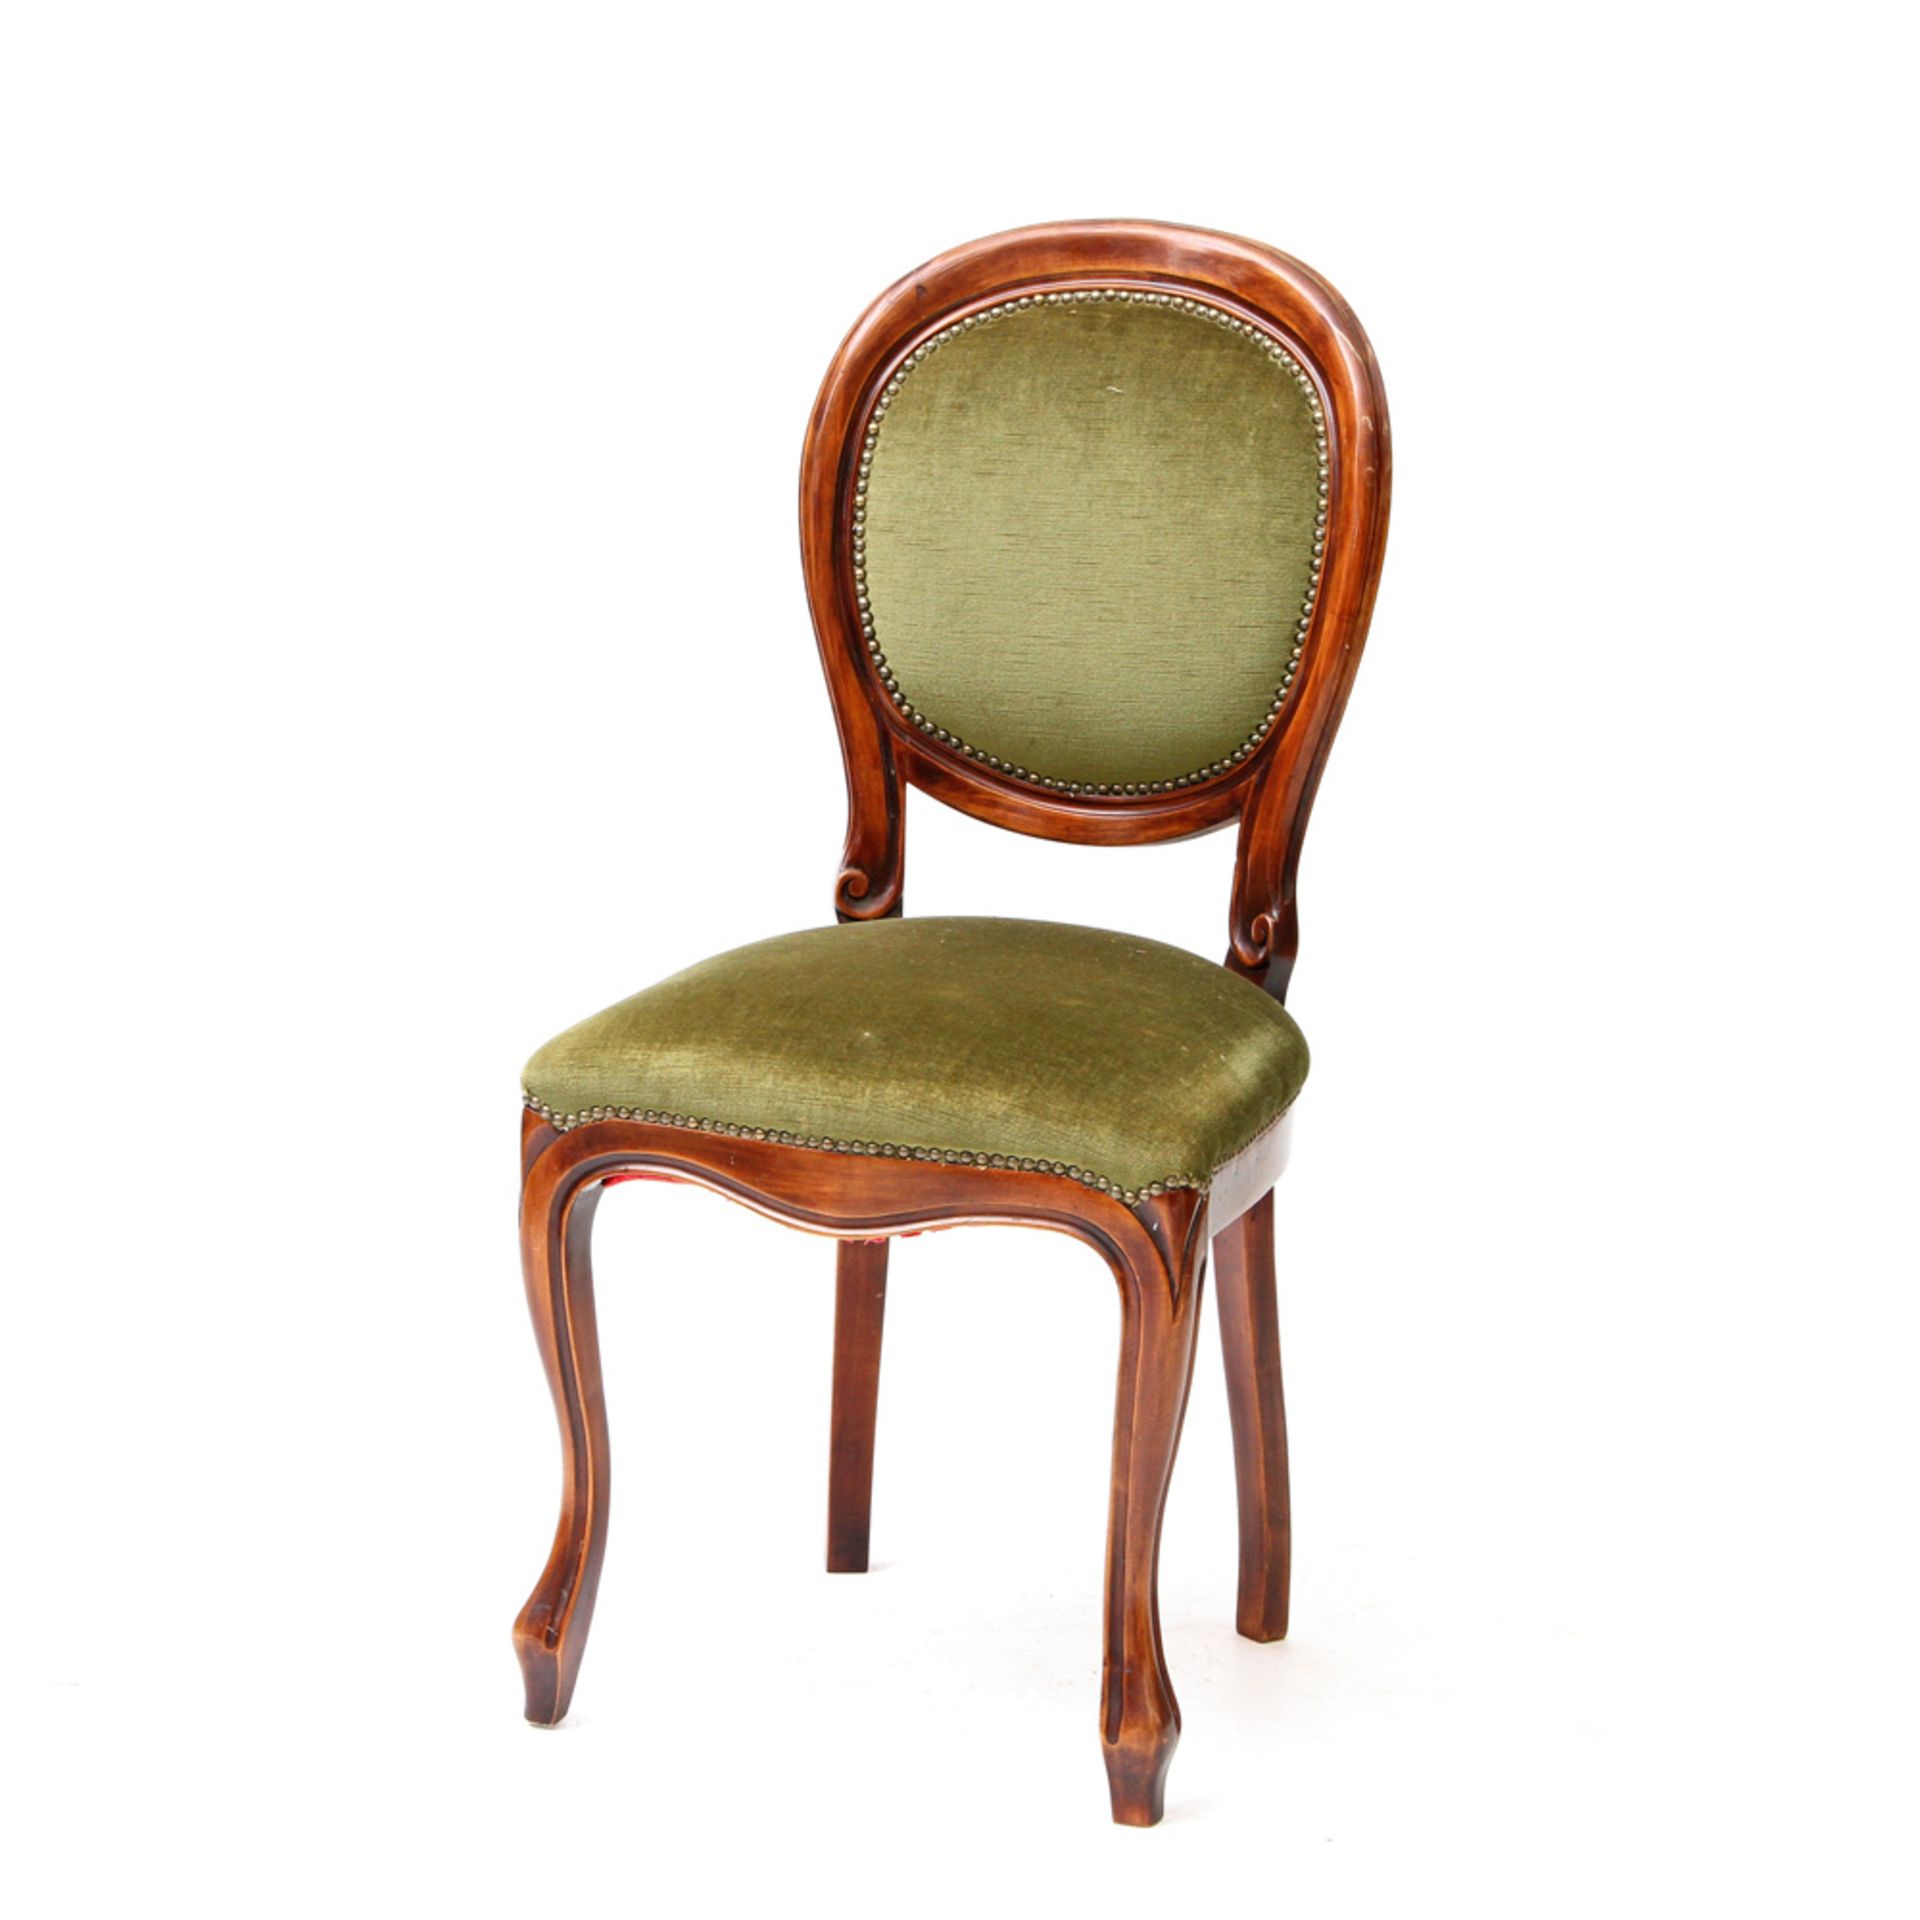 Dekorativer Stuhl im Louis-Philippe-Stil, Buche mahagonifarben gebeizt. Gepolsterte Rücken- und